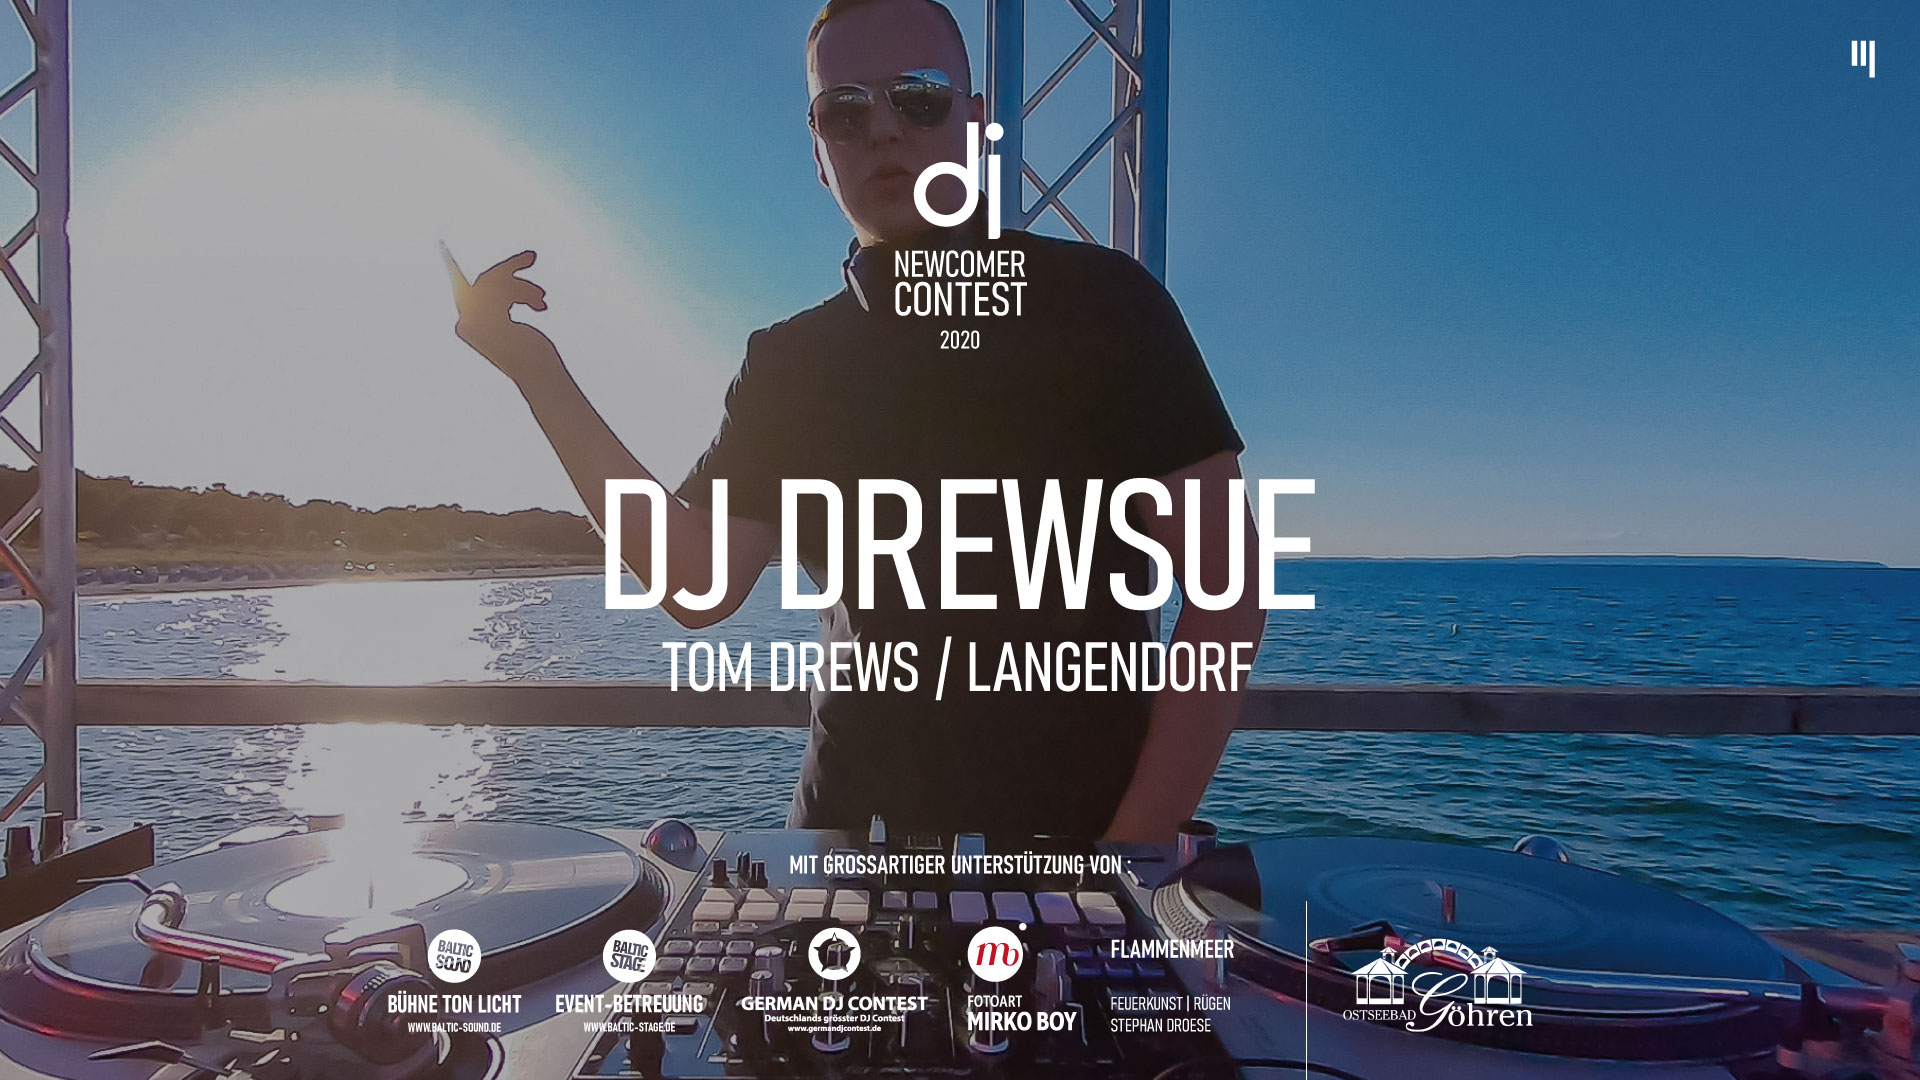 DJ DREWSUE